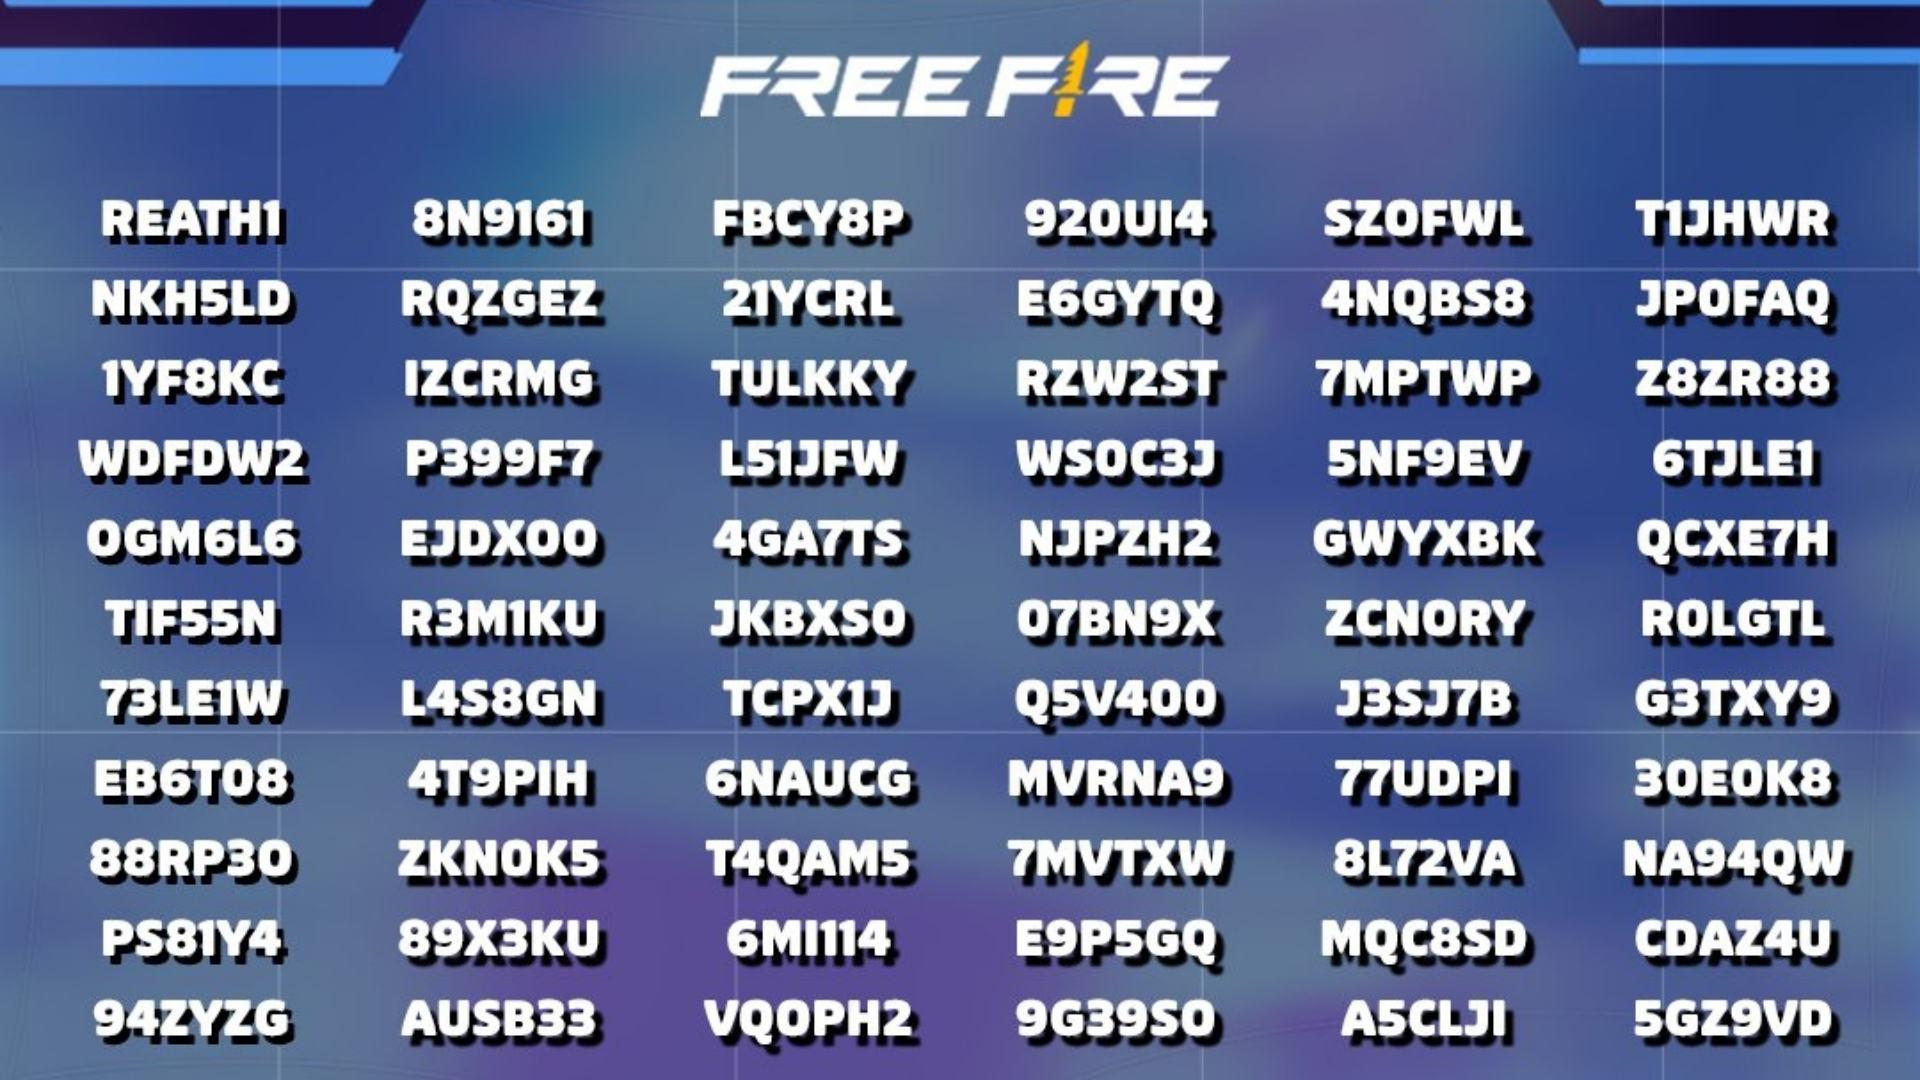 Códigos do Garena Free Fire - skins grátis e muito mais